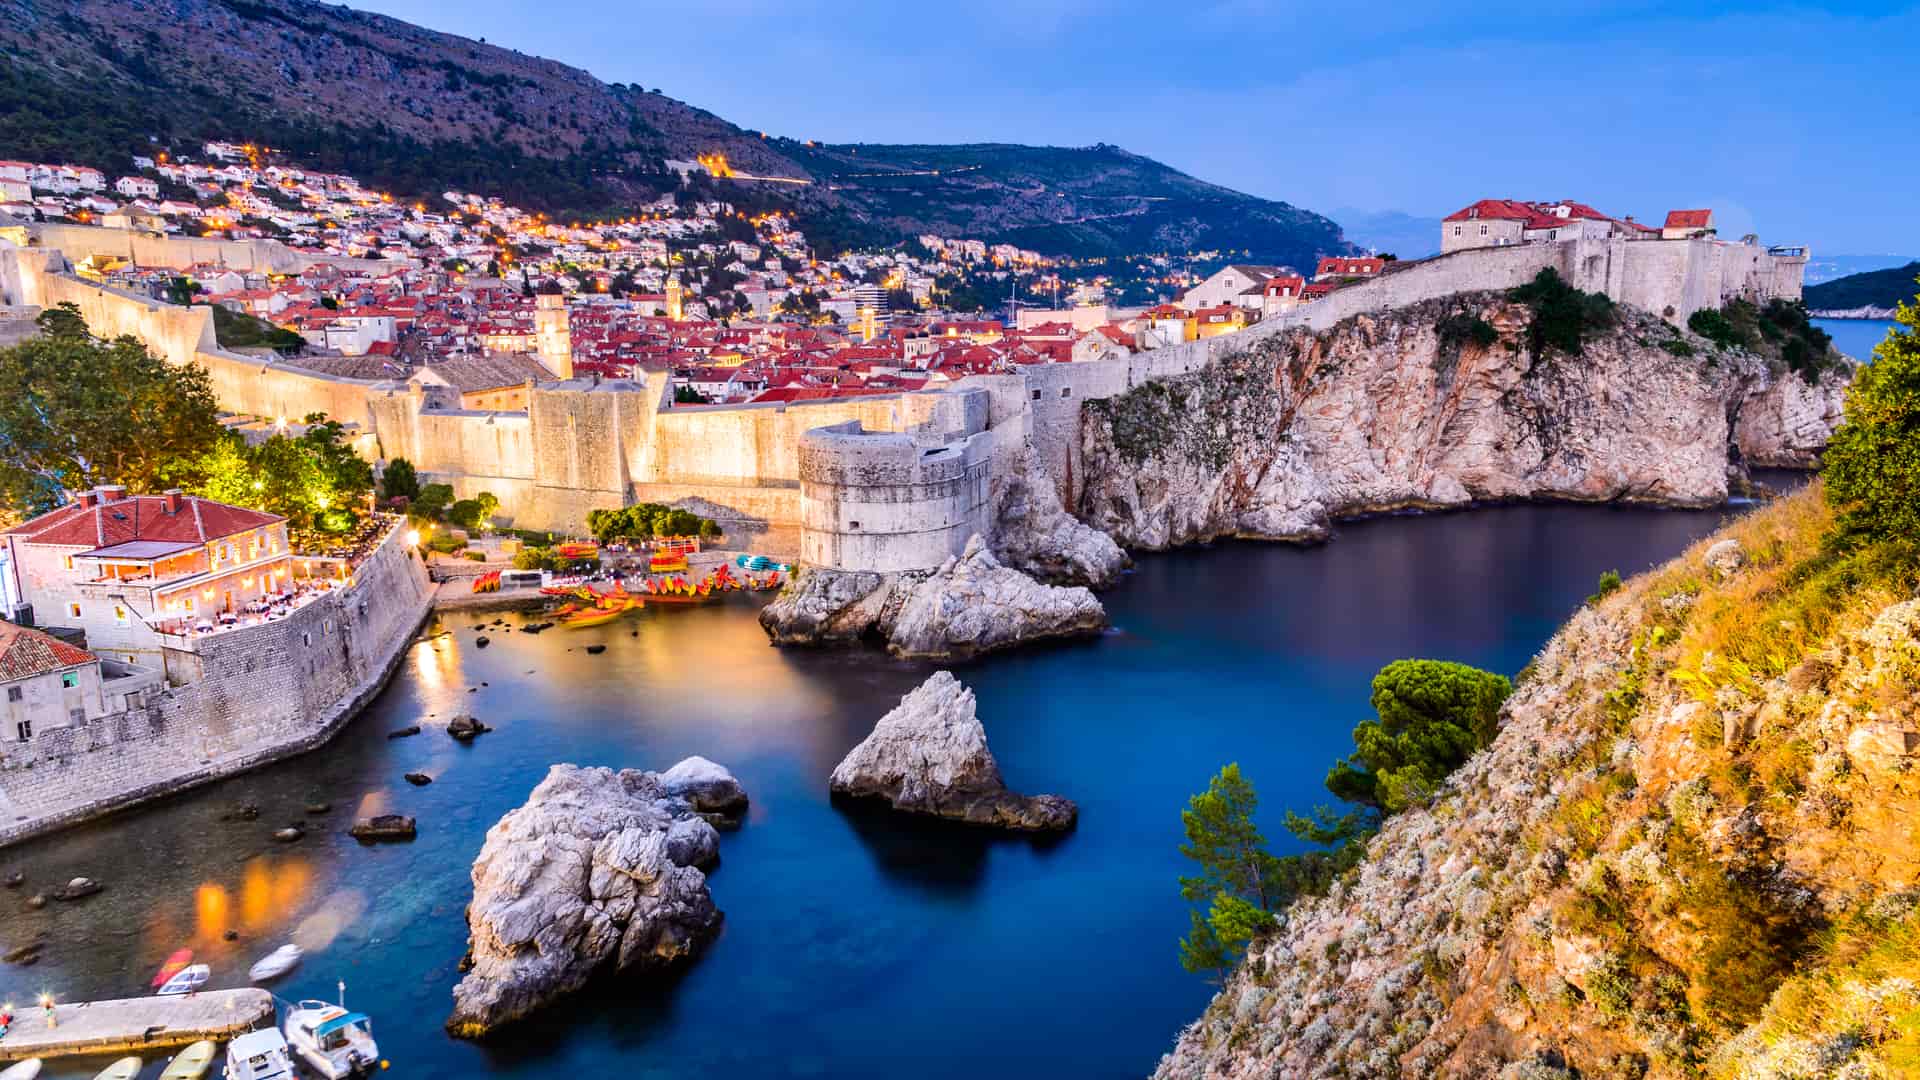 Seguro de viaje Croacia: ¿necesito uno? Alternativas y precios